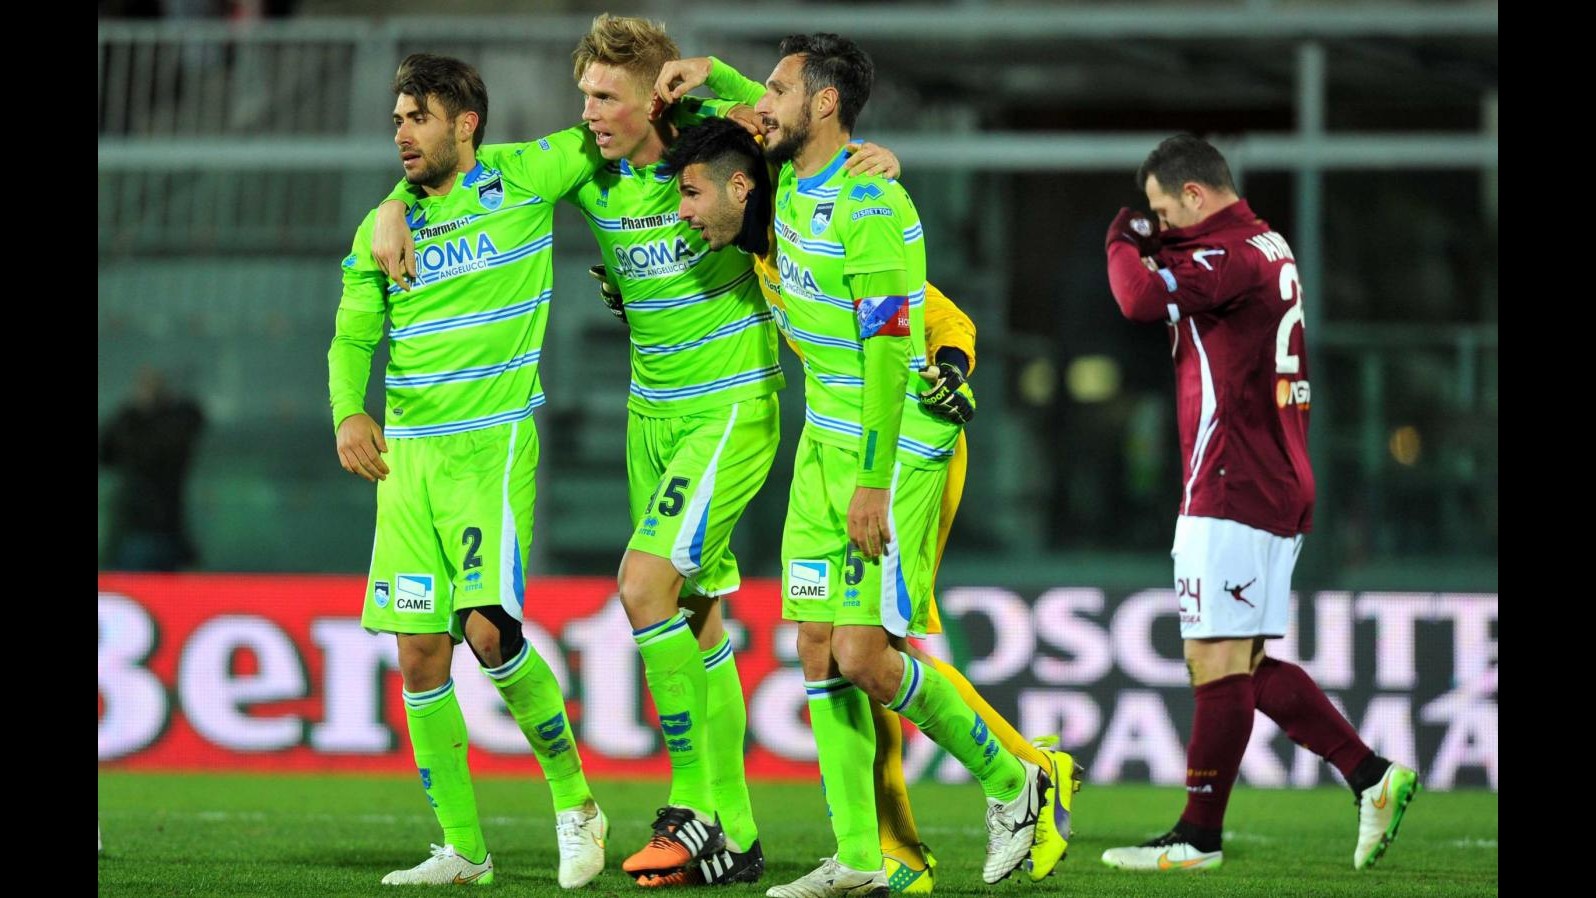 Serie B: Maniero stende il Livorno, Pescara vince 2-1 al Picchi